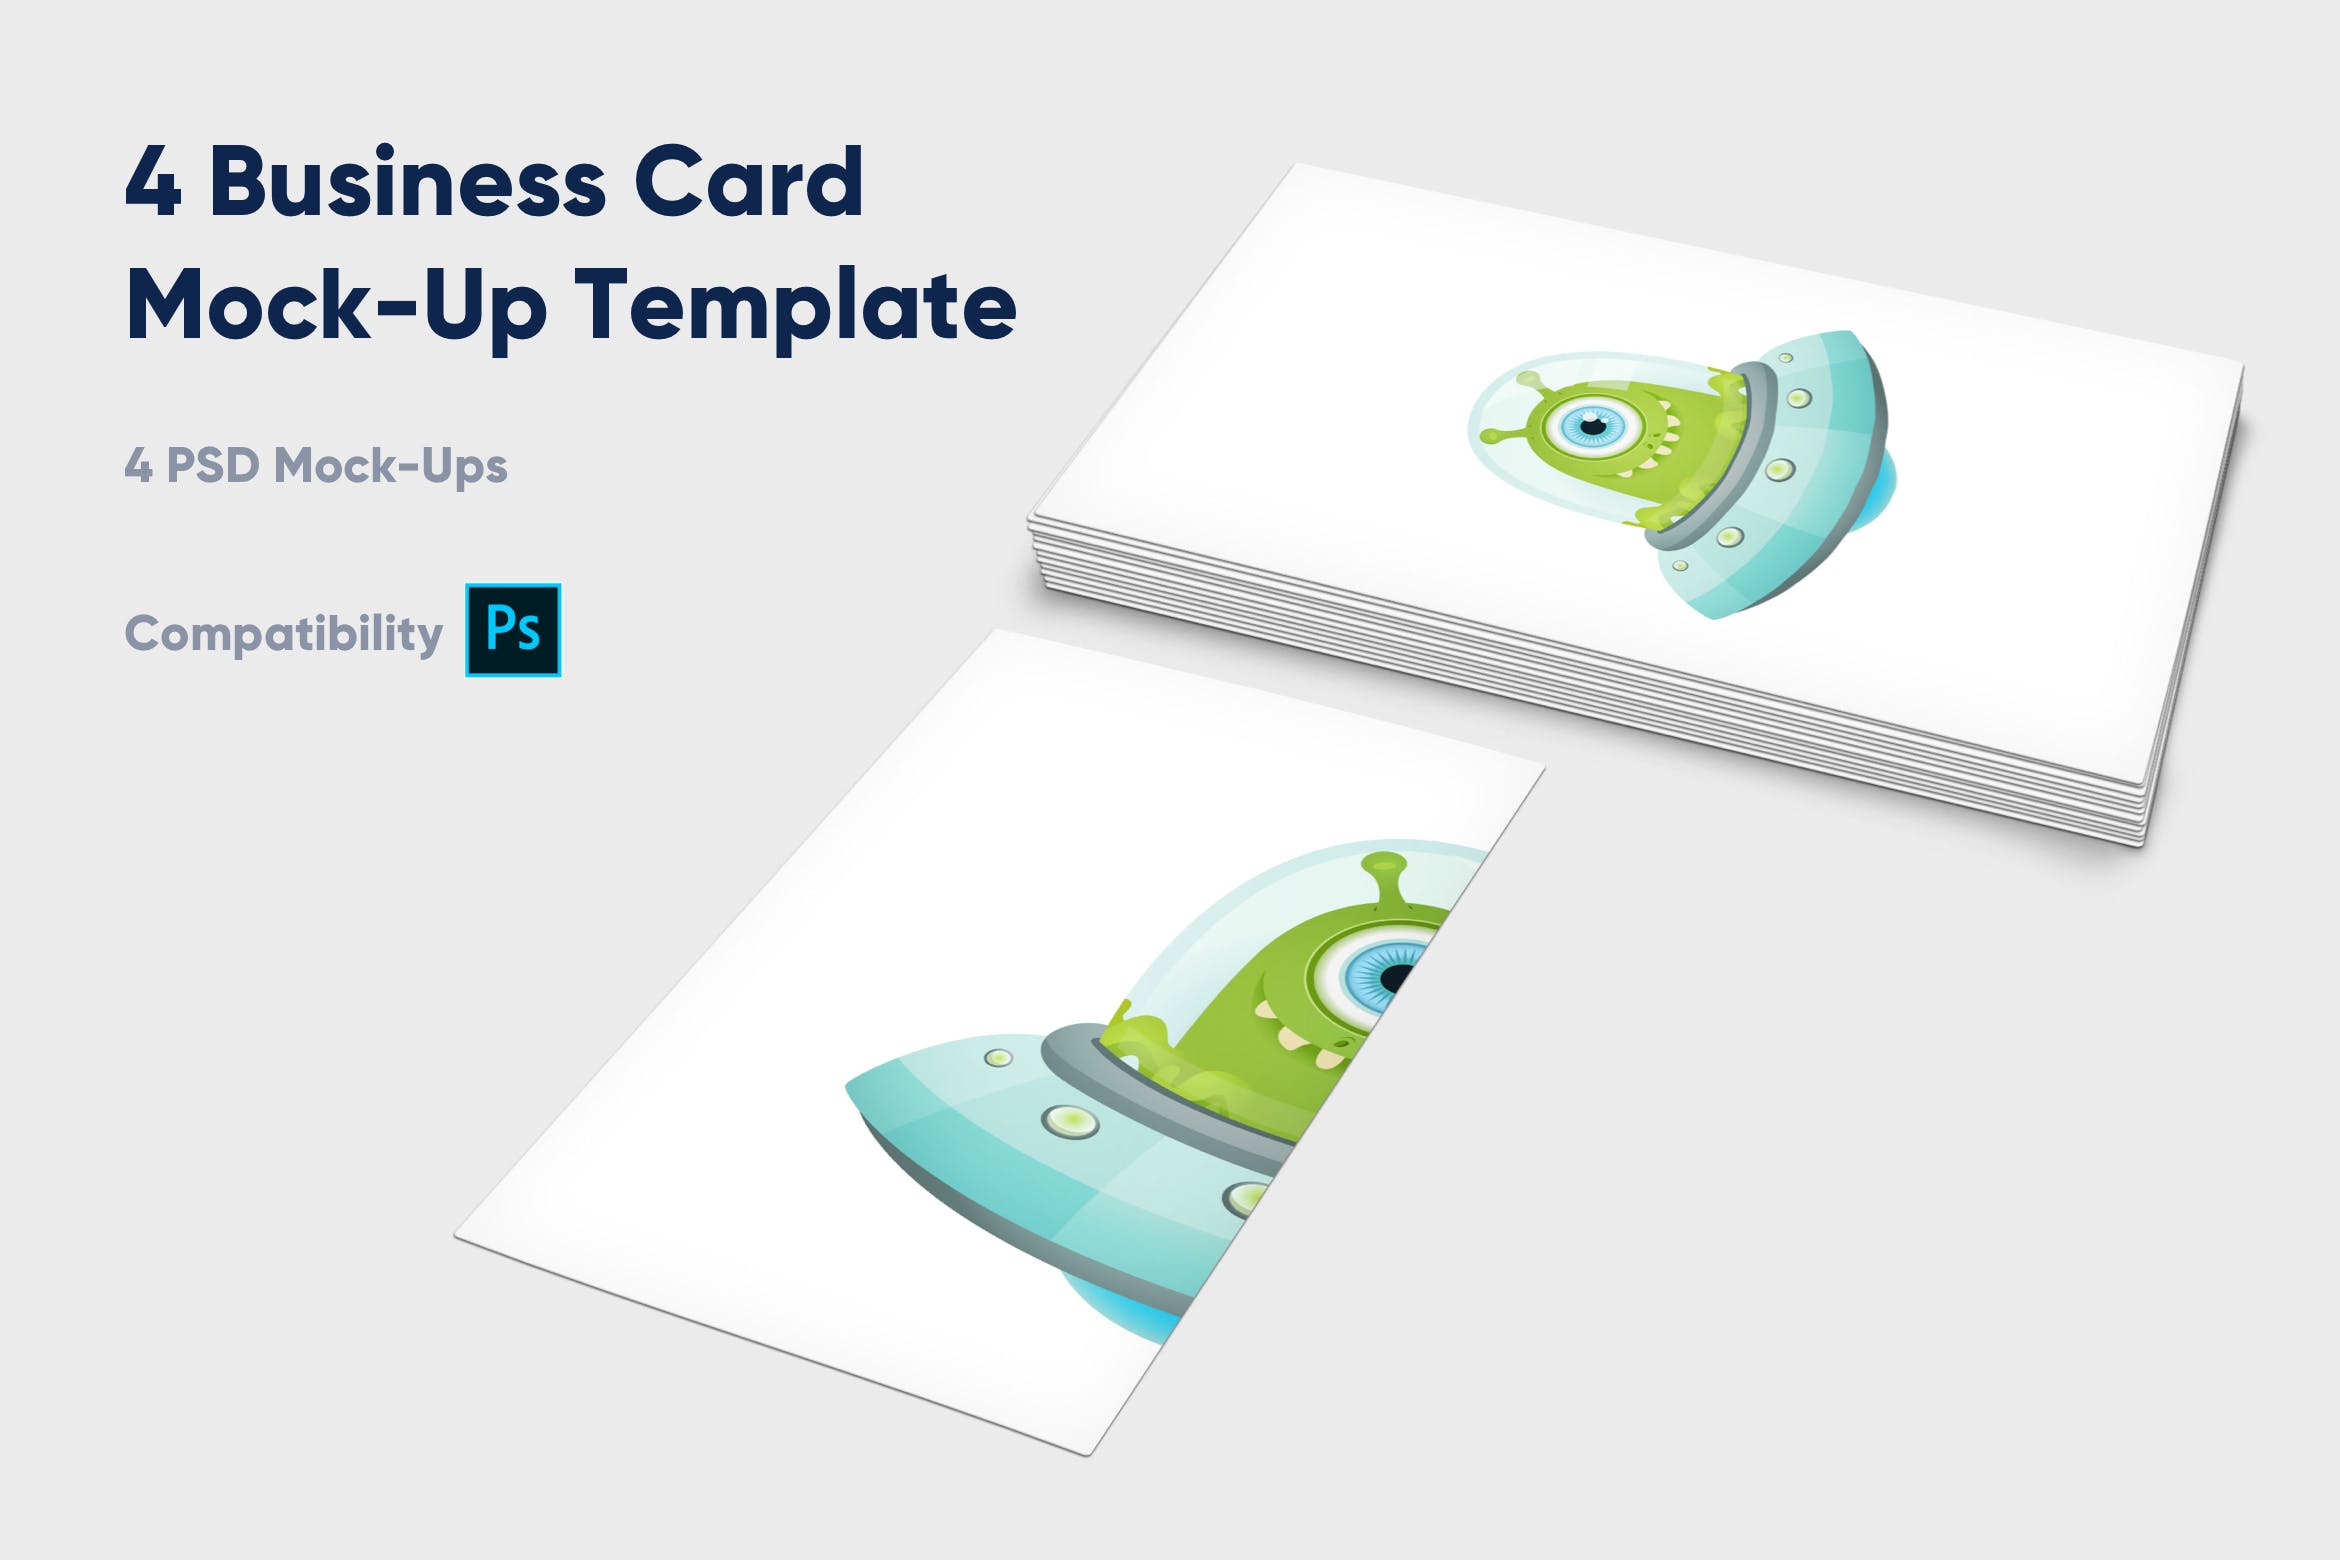 企业名片设计效果图展示样机蚂蚁素材精选模板 4 Business Card Mock-Up Template插图